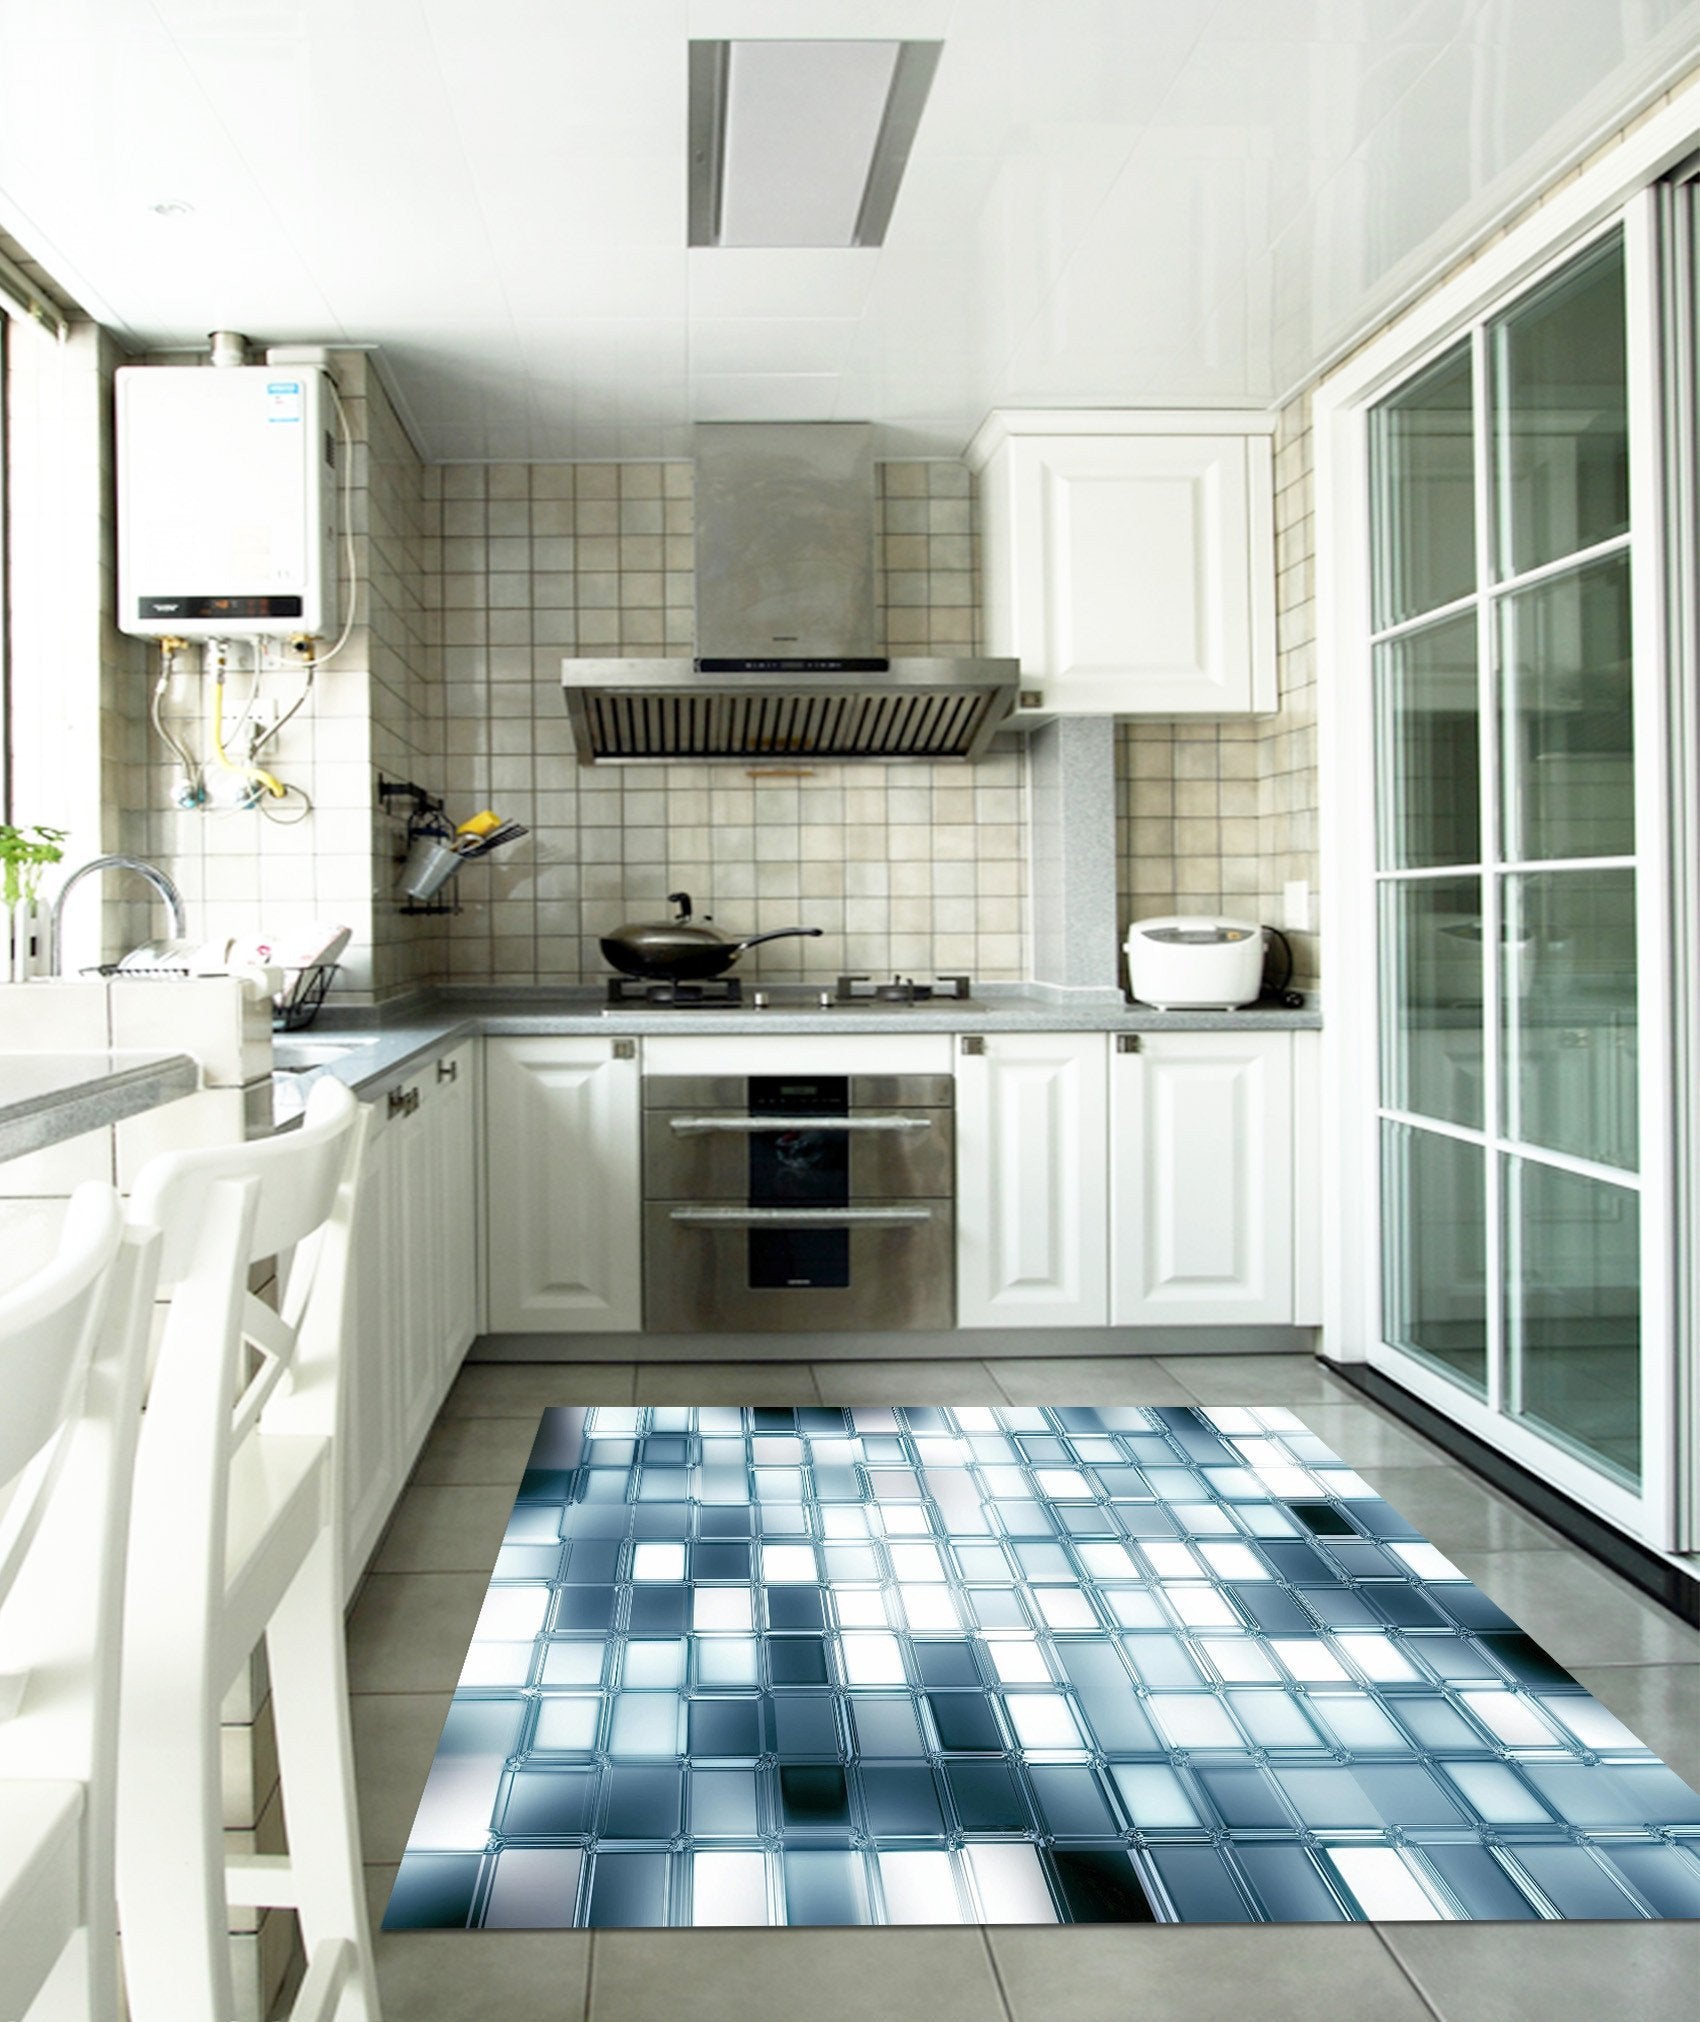 3D Shiny Square Grids Kitchen Mat Floor Mural Wallpaper AJ Wallpaper 